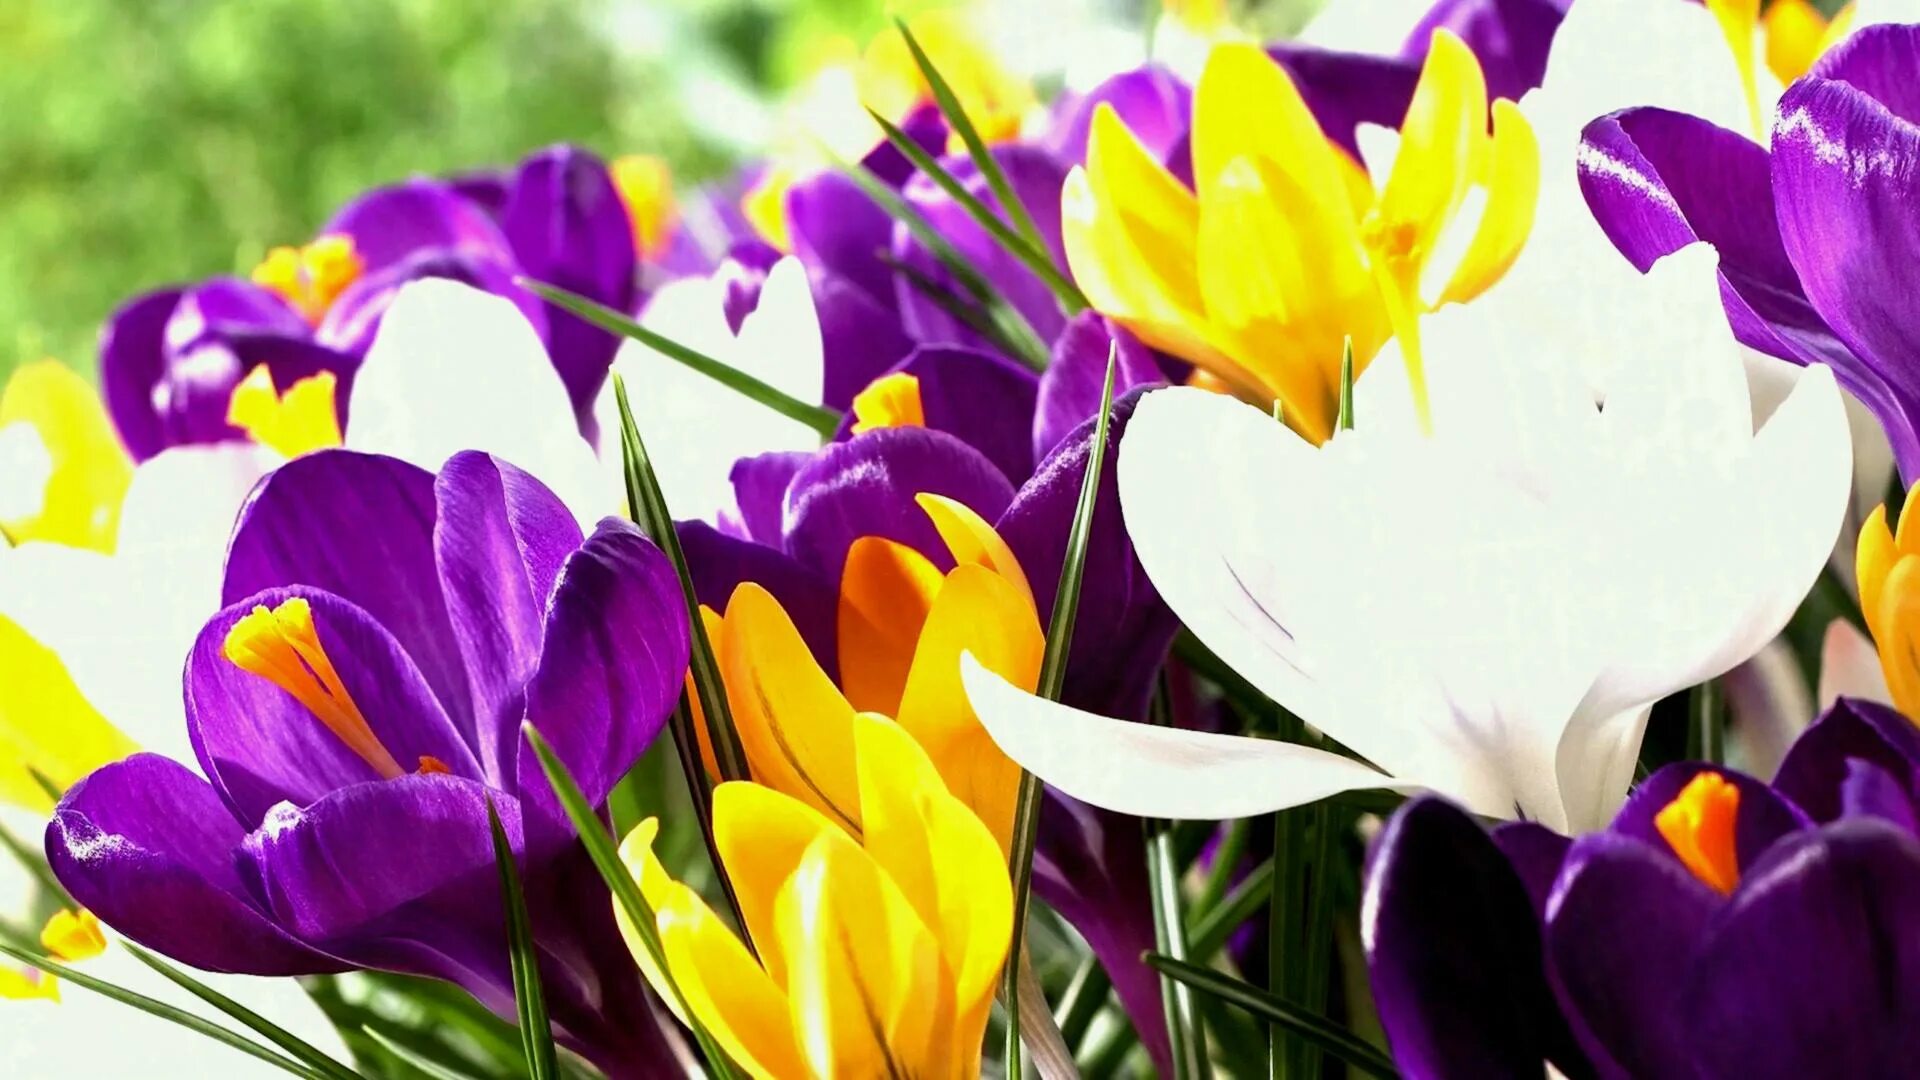 Обои на рабочий стол крокусы. Крокусы желтые и фиолетовые. Тюльпаны и крокусы. Крокус весенний фиолетовый. Цветы крокусы первоцветы.